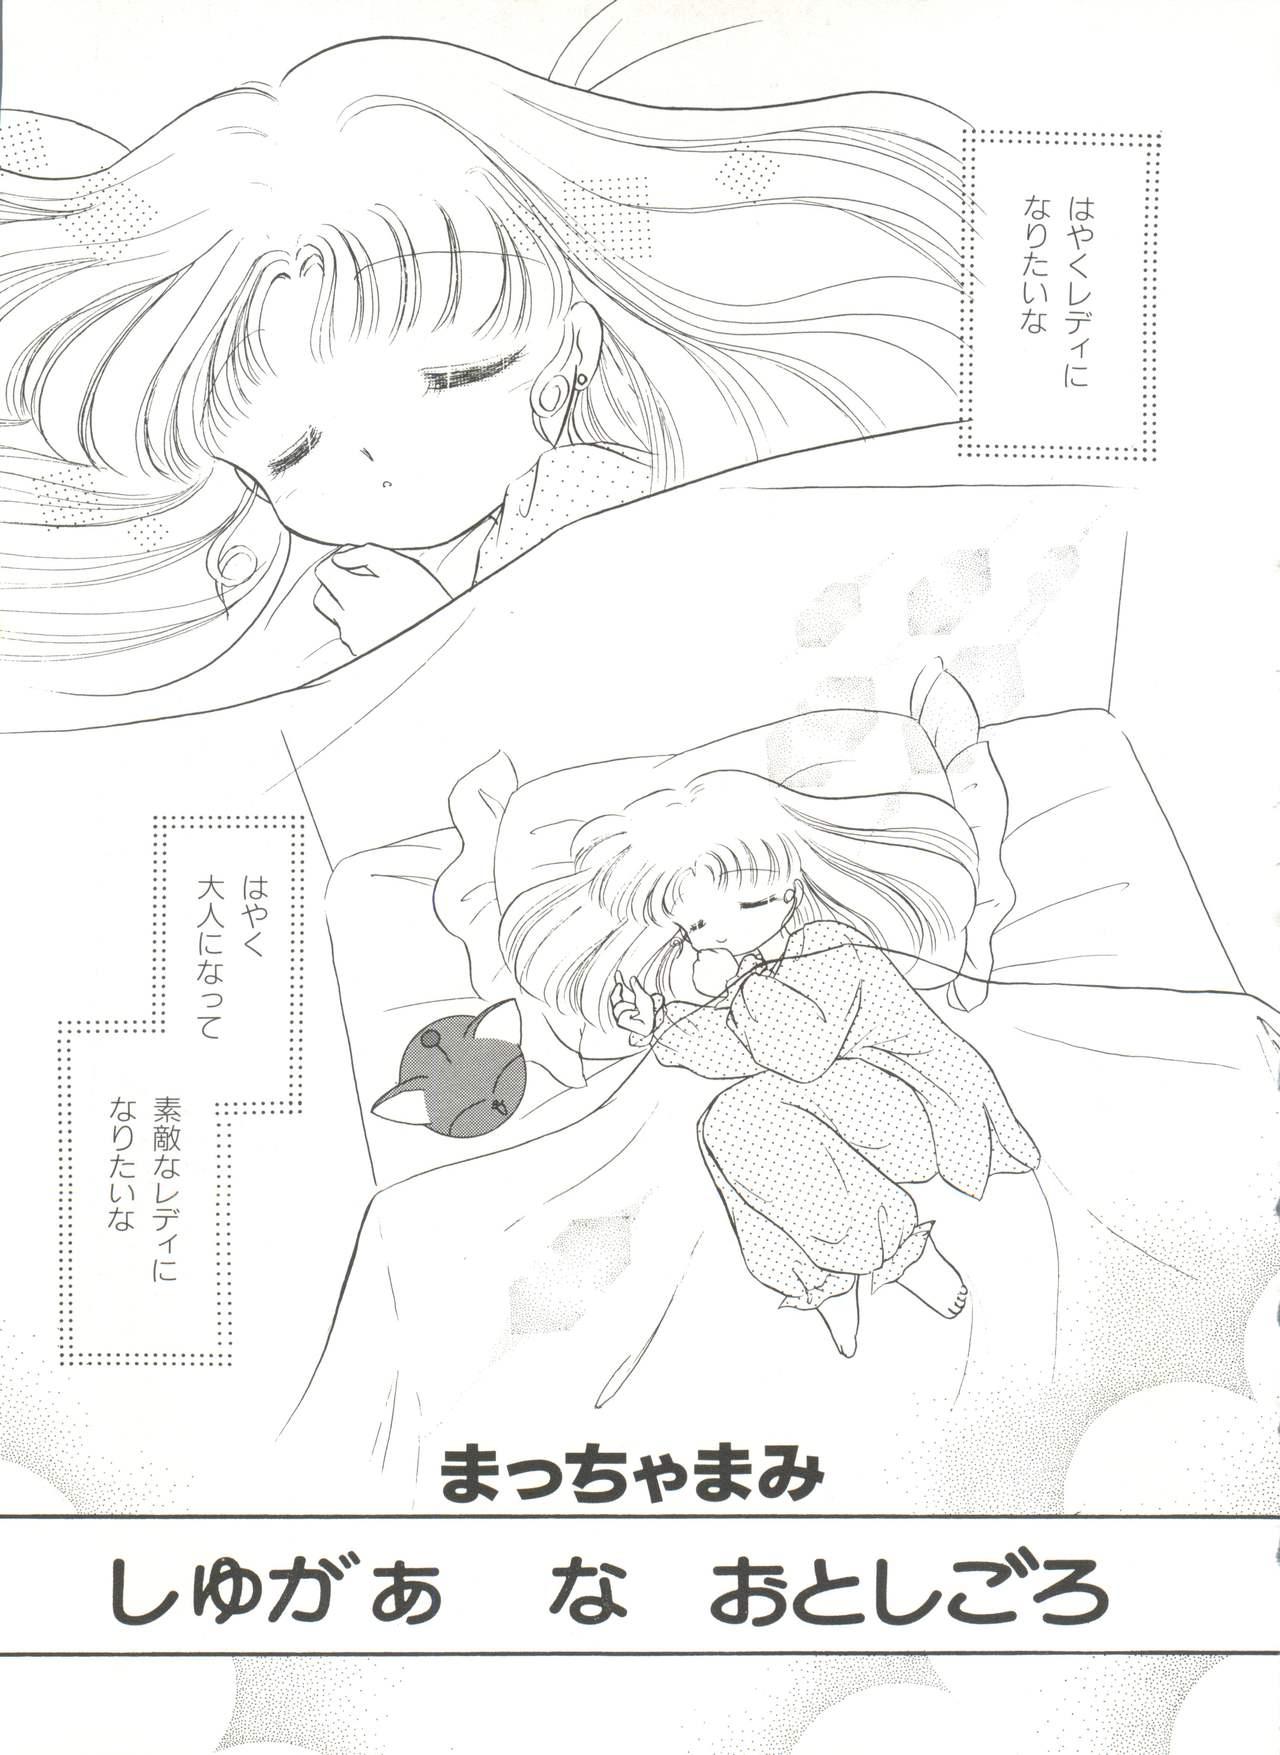 Bishoujo Doujinshi Anthology 16 - Moon Paradise 10 Tsuki no Rakuen 89